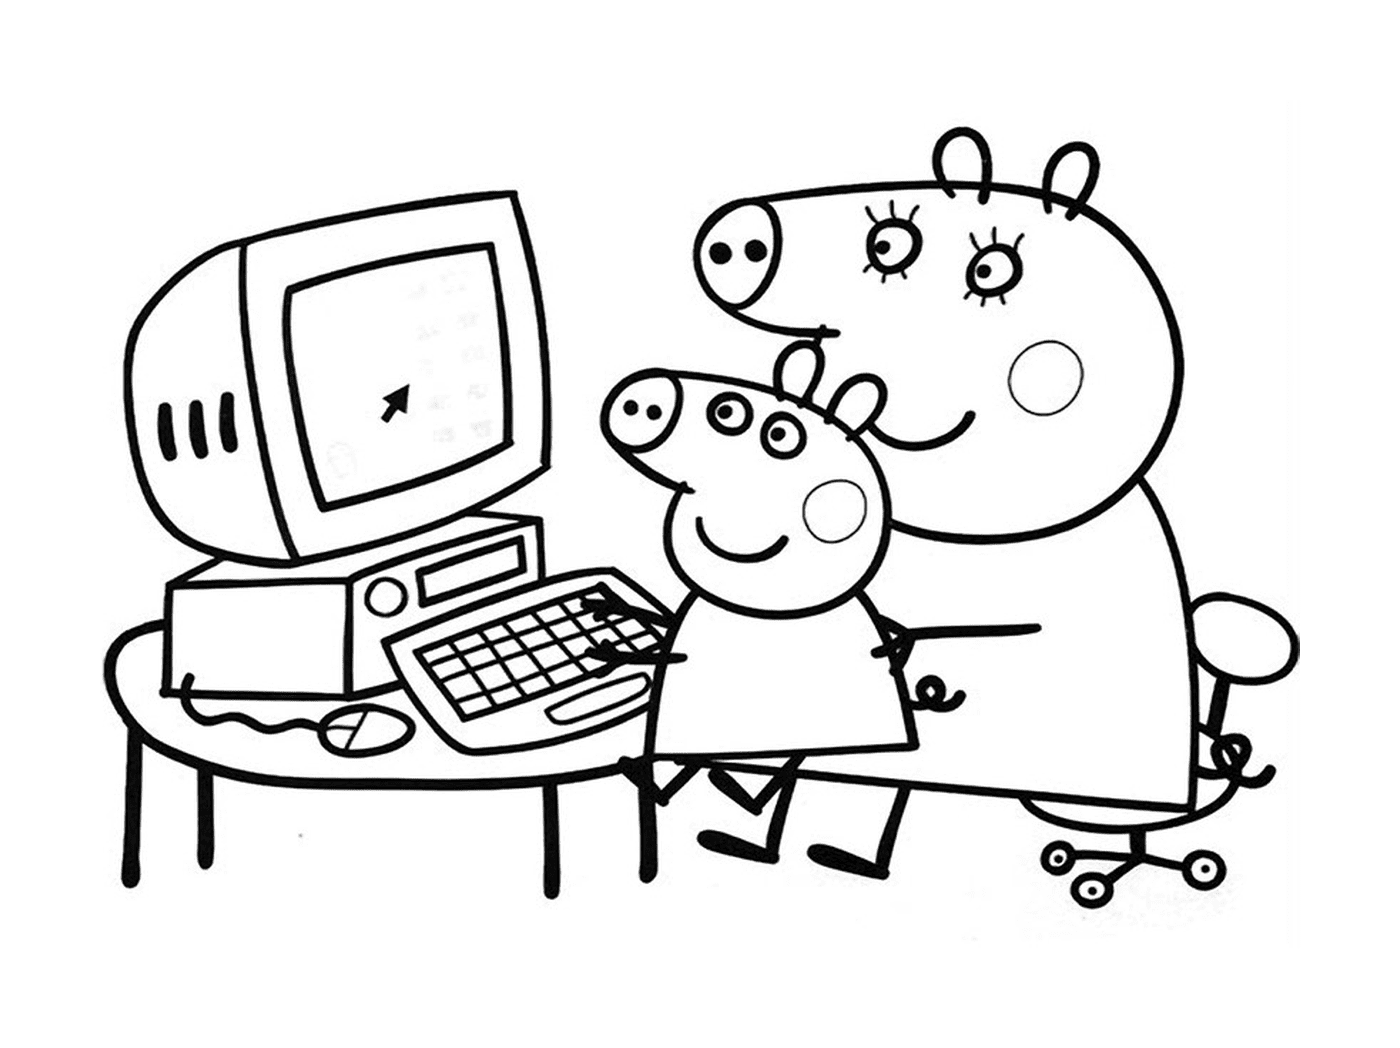  电脑上的Peppa Pig和George Pig 电脑上的Peppa Pig和George Pig 